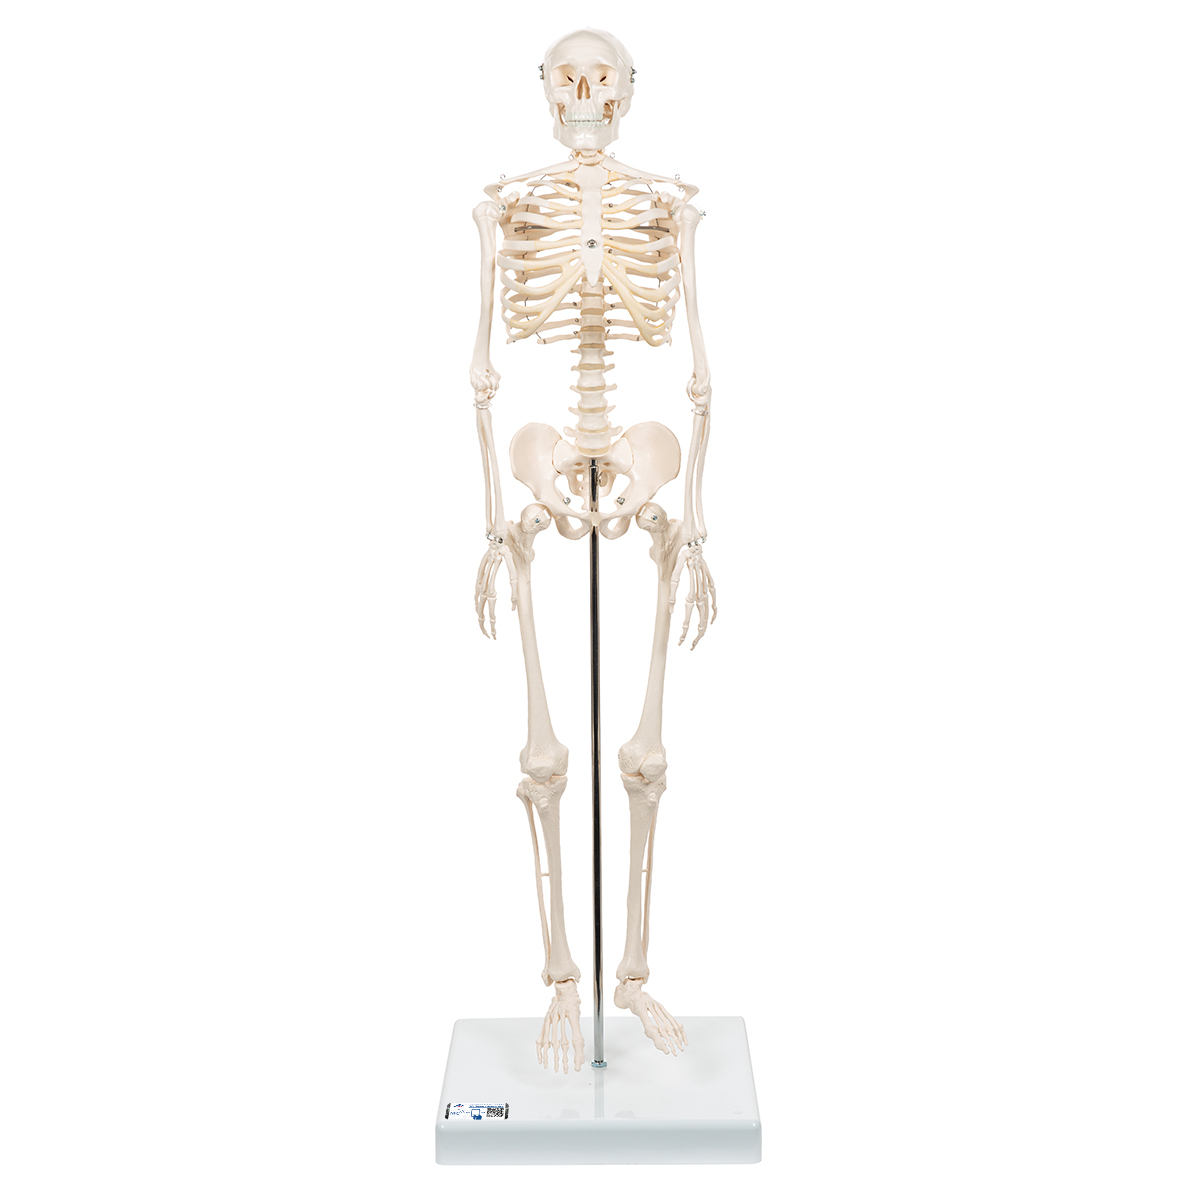 Mini Skelett Modell "Shorty", mit 3-teiligem Schädel, auf Sockel - 3B Smart Anatomy, Bestellnummer 1000039, A18, 3B Scientific